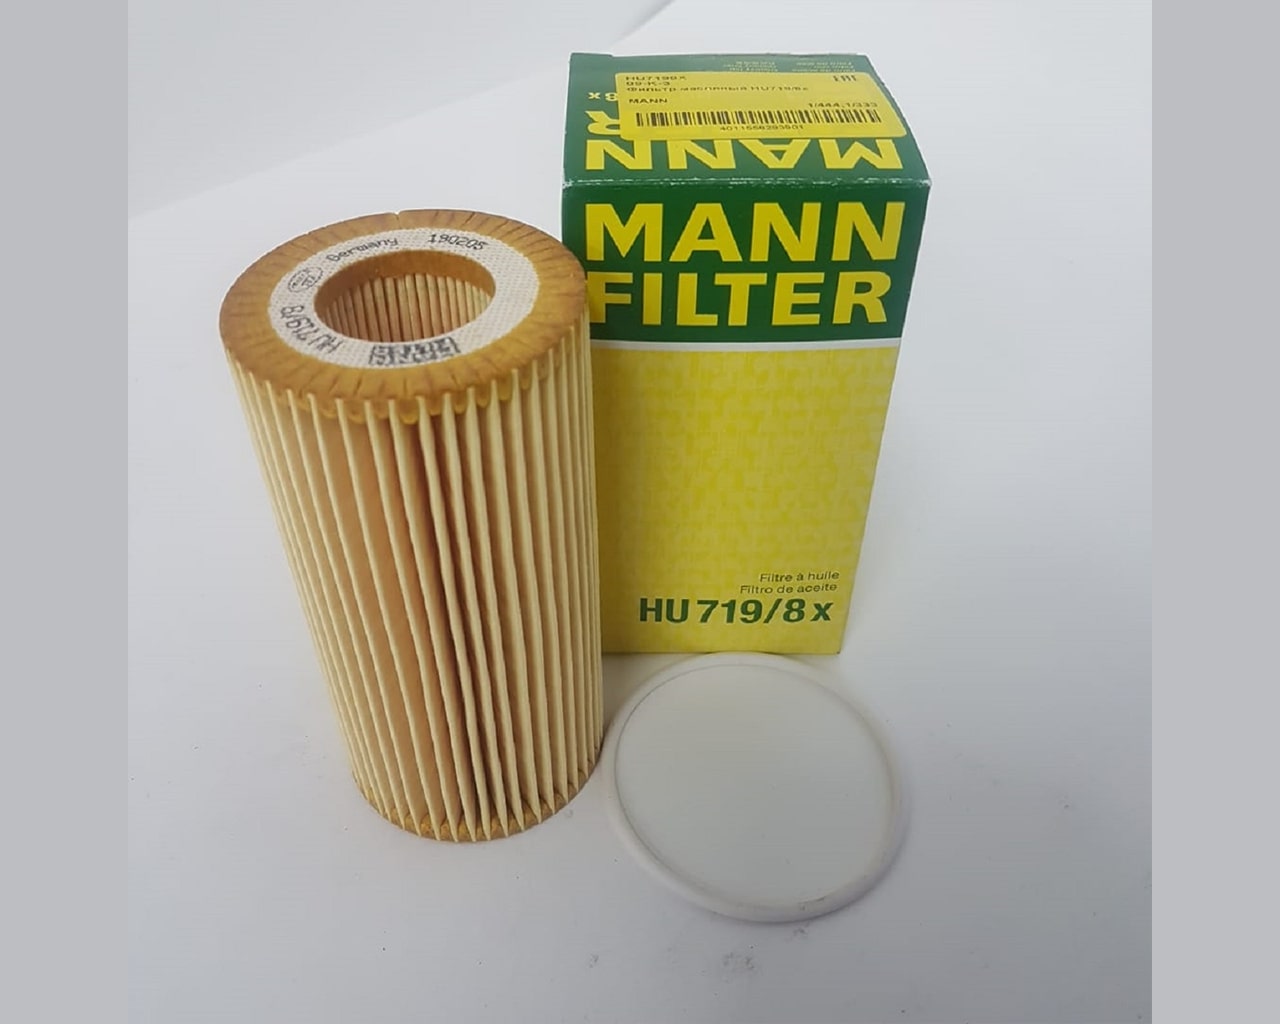 Hu7985. Mann hu719/8x. Масляный фильтр Mann hu719/8x. Hu 719/8 x фильтр масляный. Hu 719/8 x фильтр масляный (вставка) Mann.